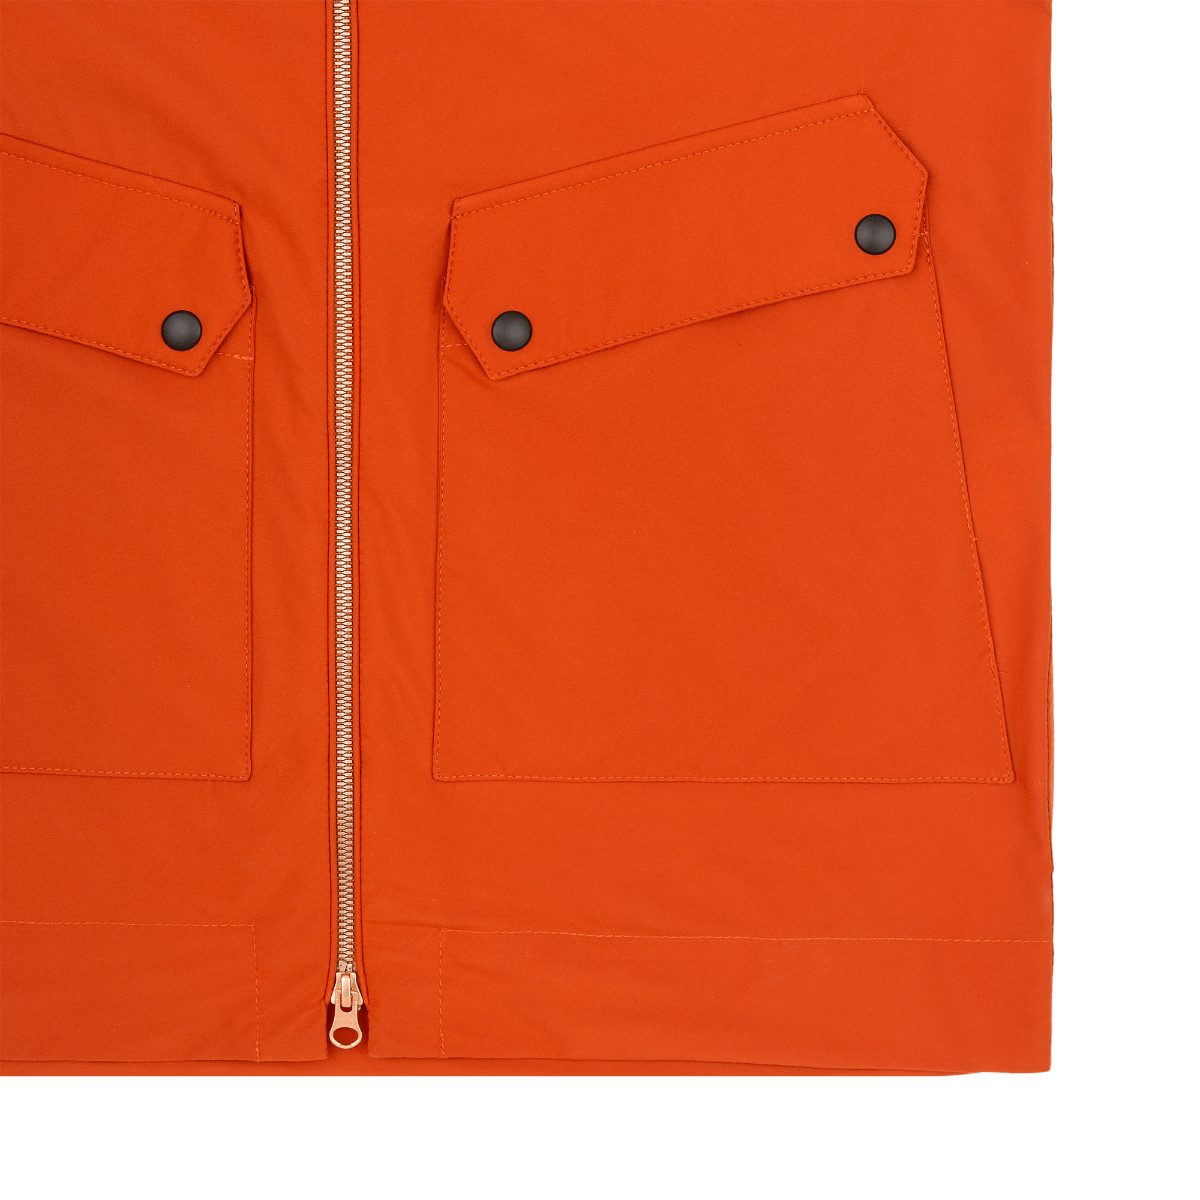 Men's Orange Windbreaker Jacket